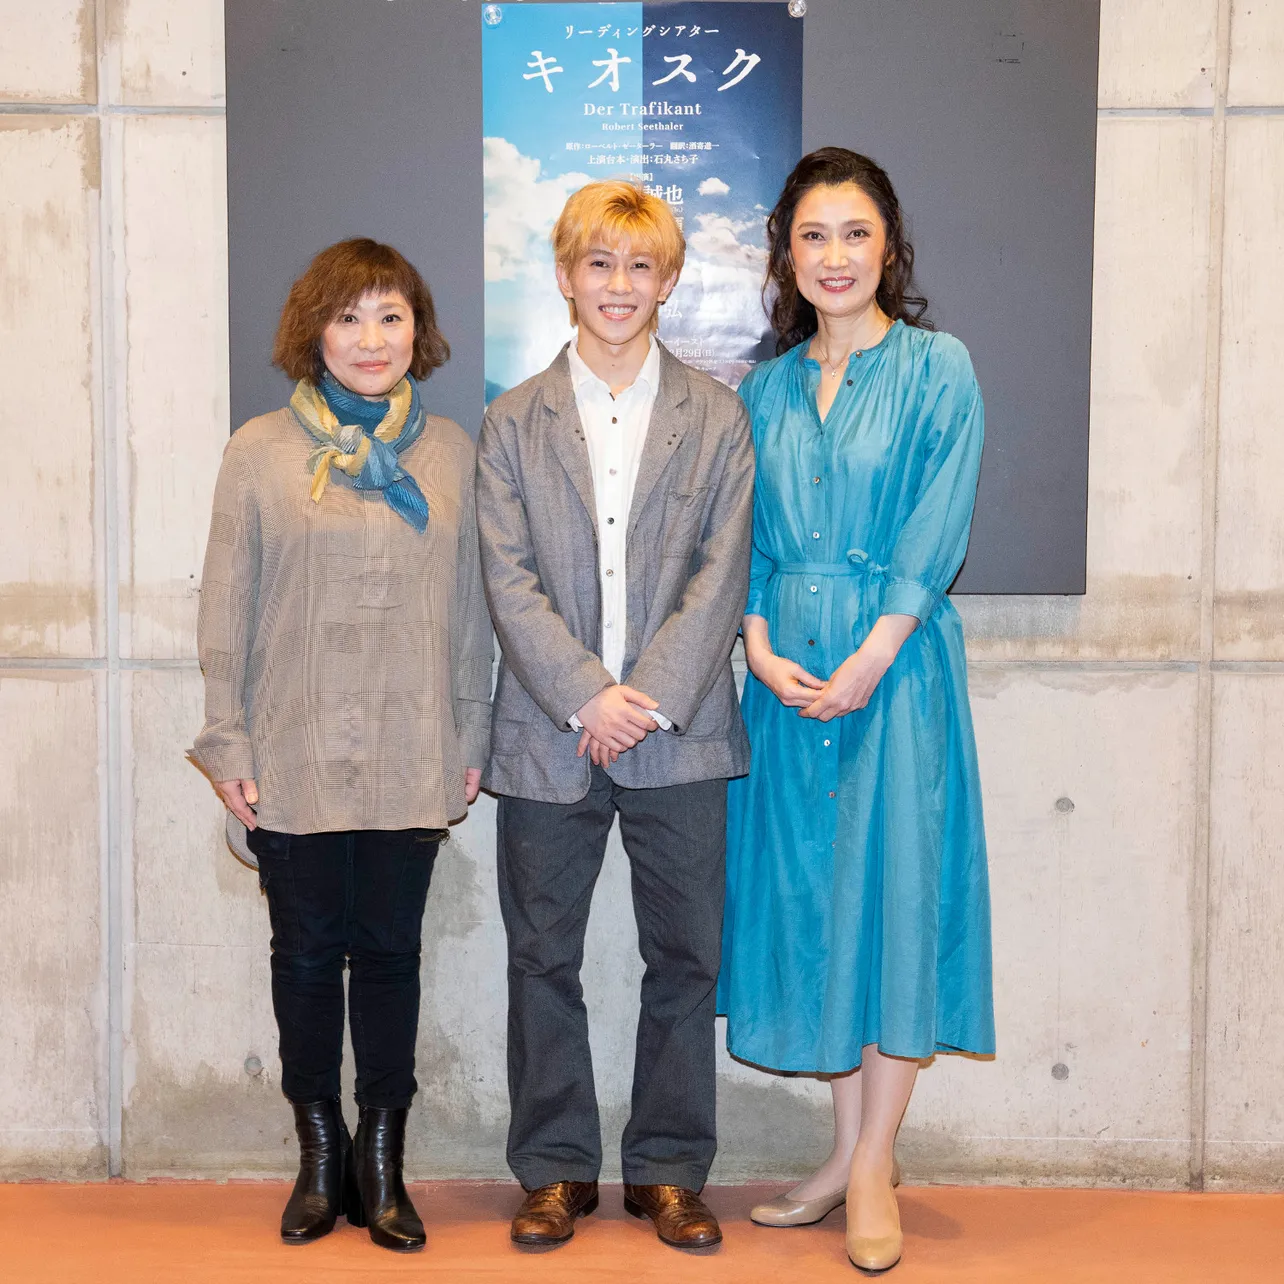 囲み取材に応じた演出の石丸さち子、末澤誠也、一路真輝(写真左から)